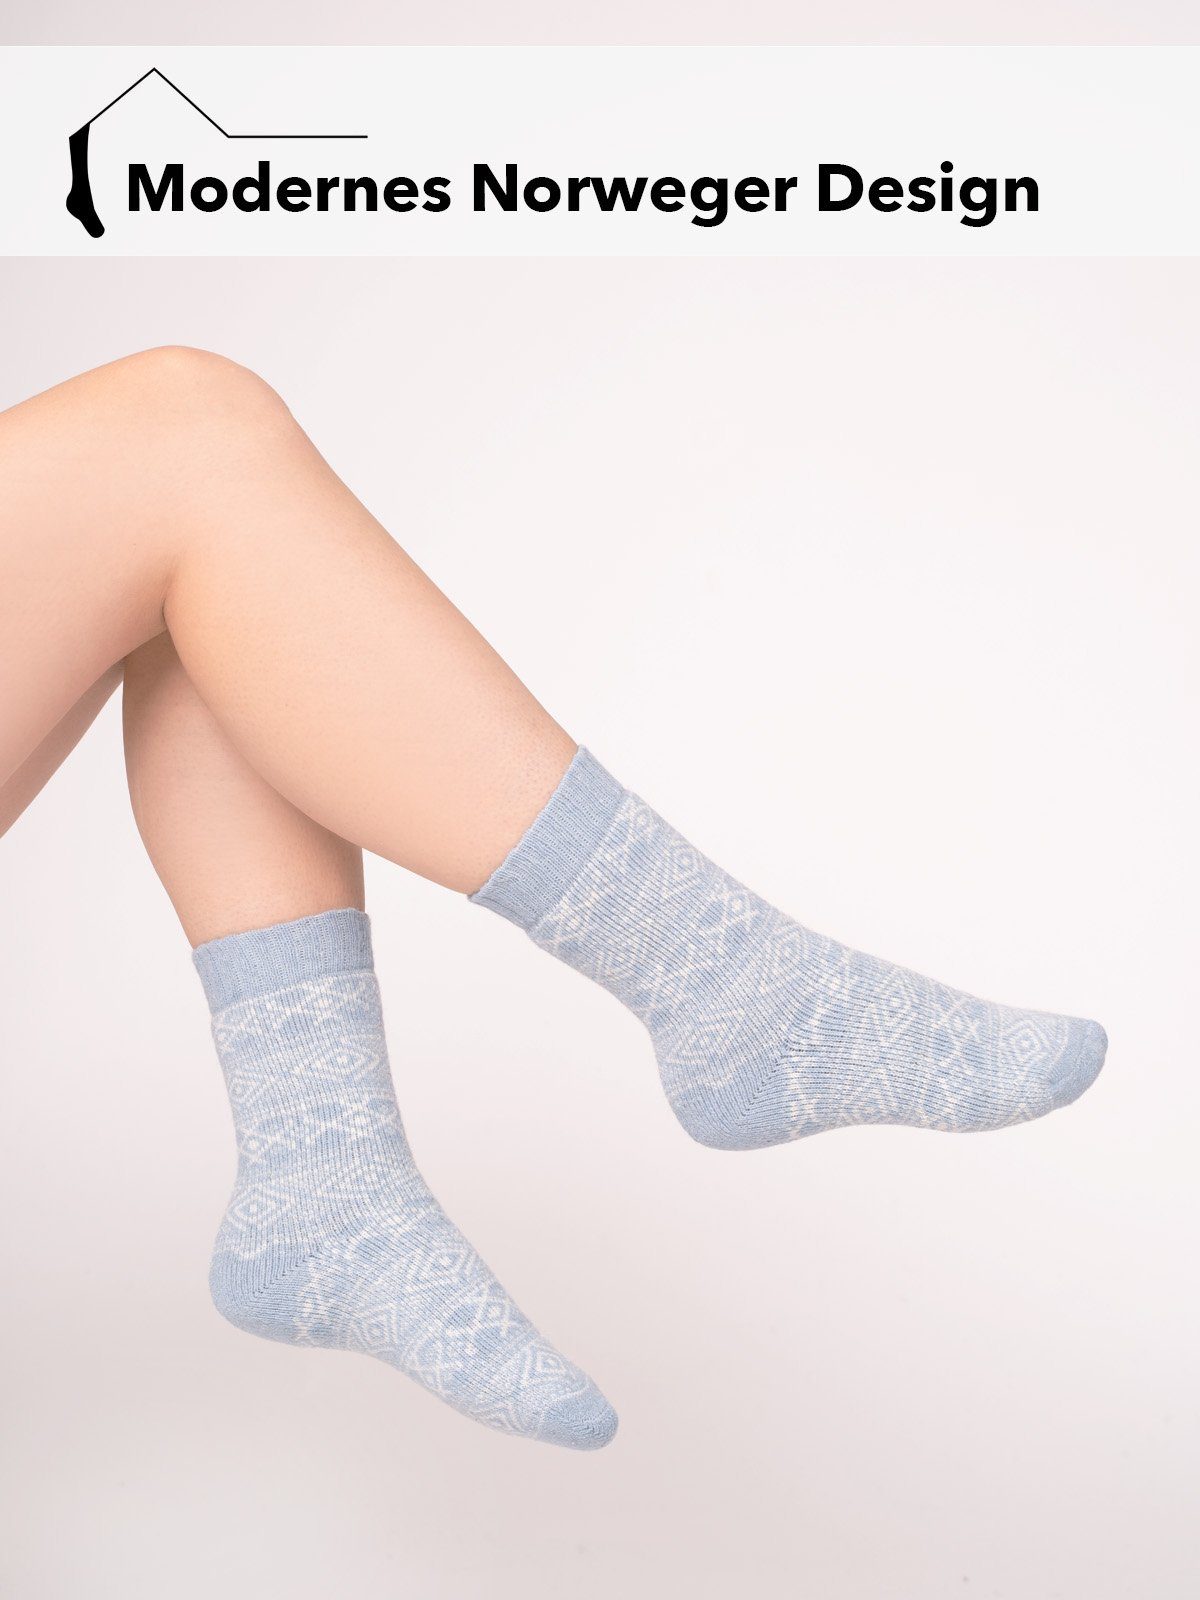 Nordic Grau Skandinavische Wollsocke Hyggelig Dicke Norwegischem Norwegersocken In Warm Socken 45% "Norwegen Mit Design HomeOfSocks Wollanteil Klassisch" Kuschelsocken